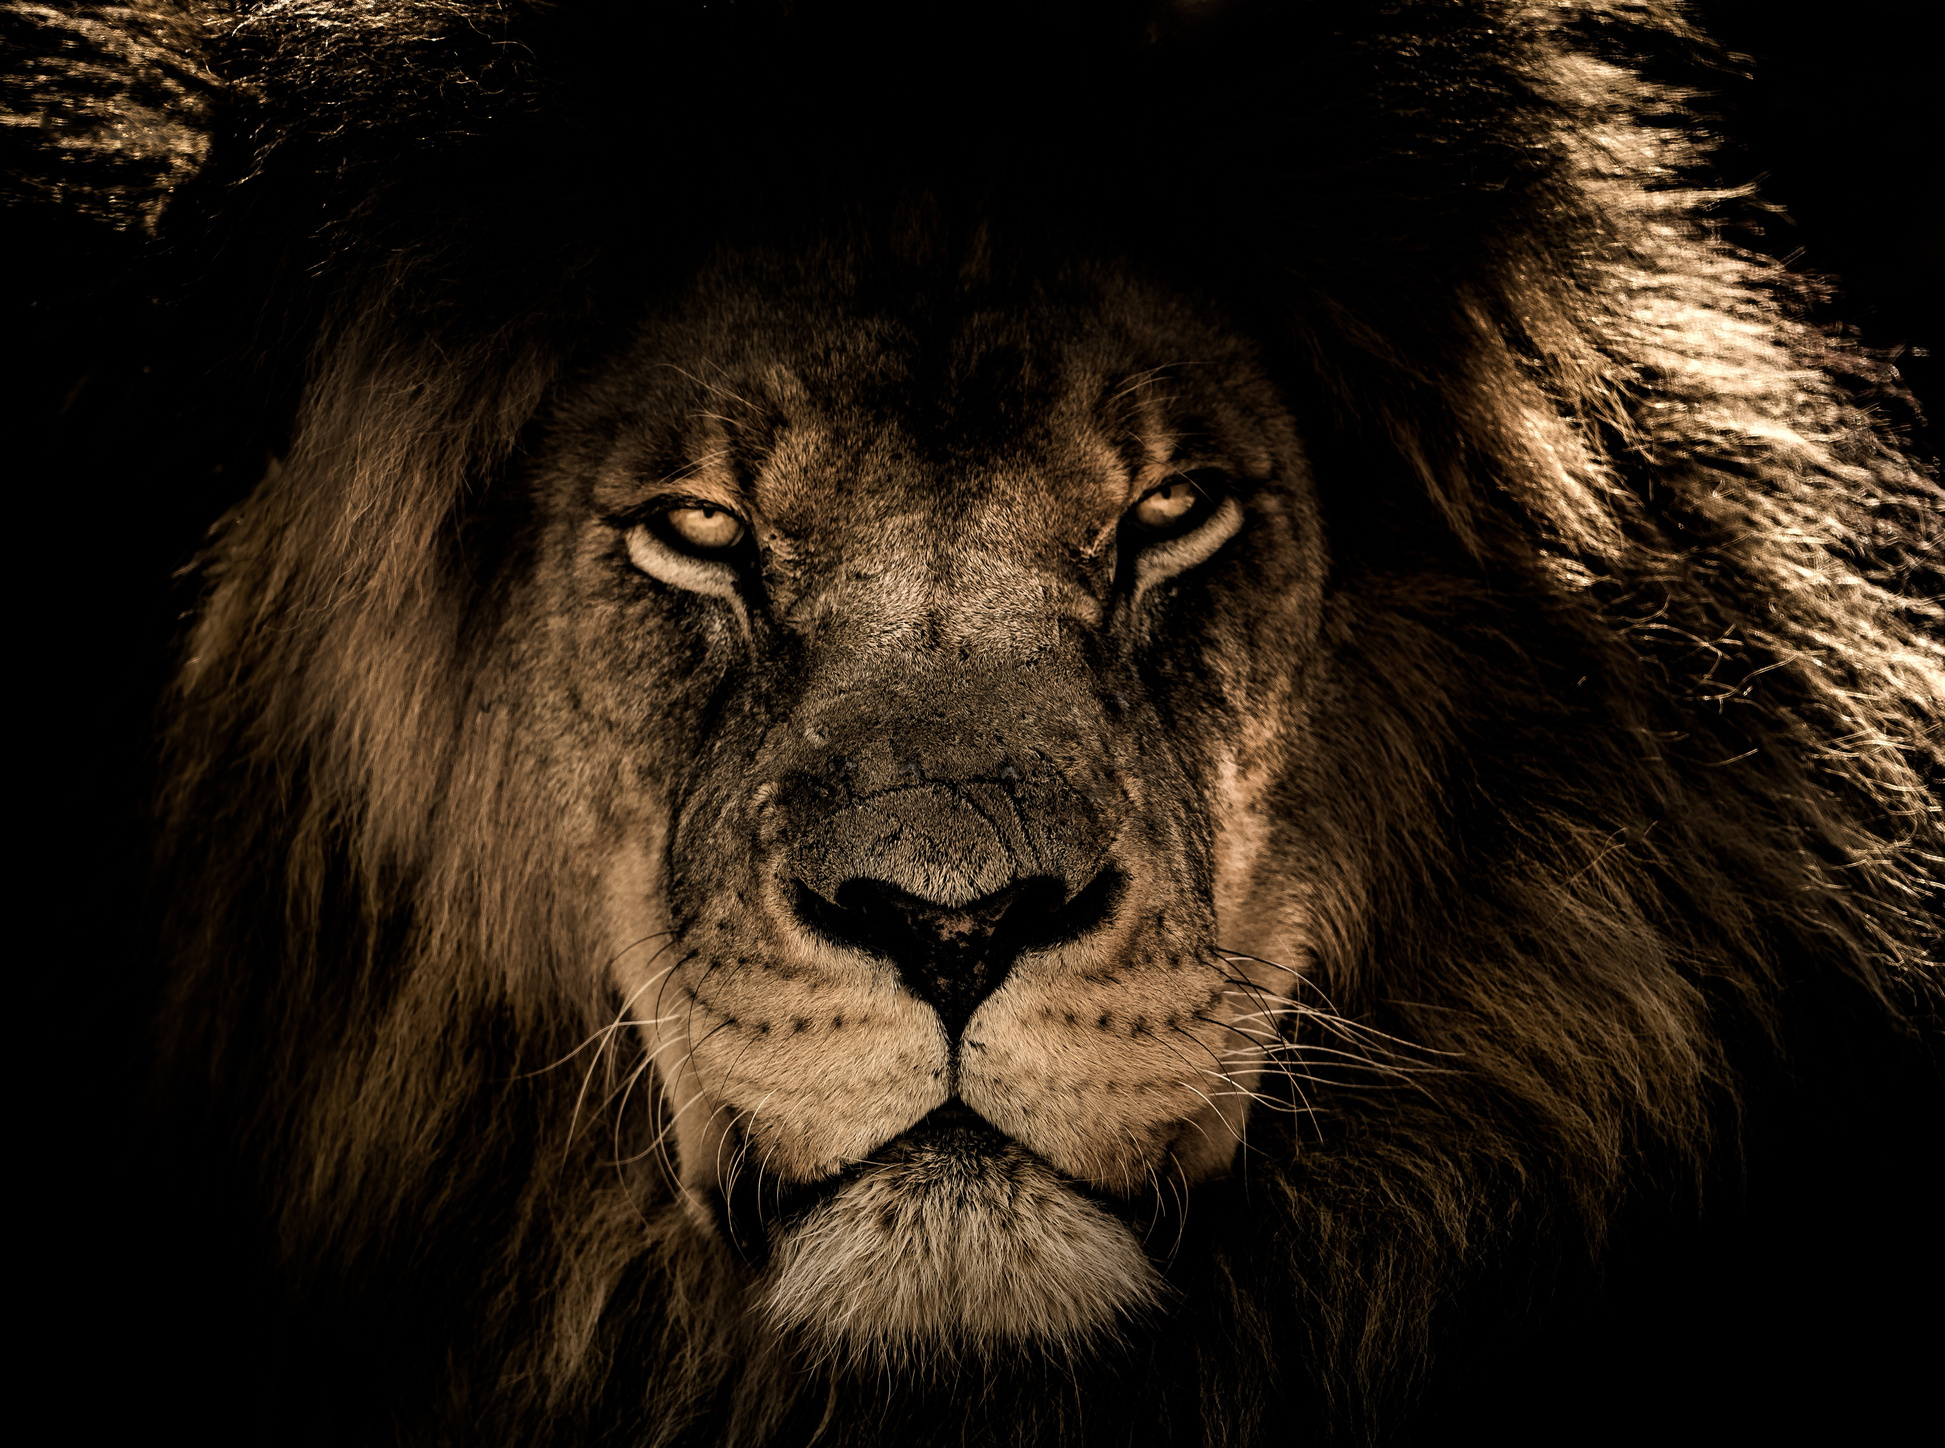 African Lion Portrait